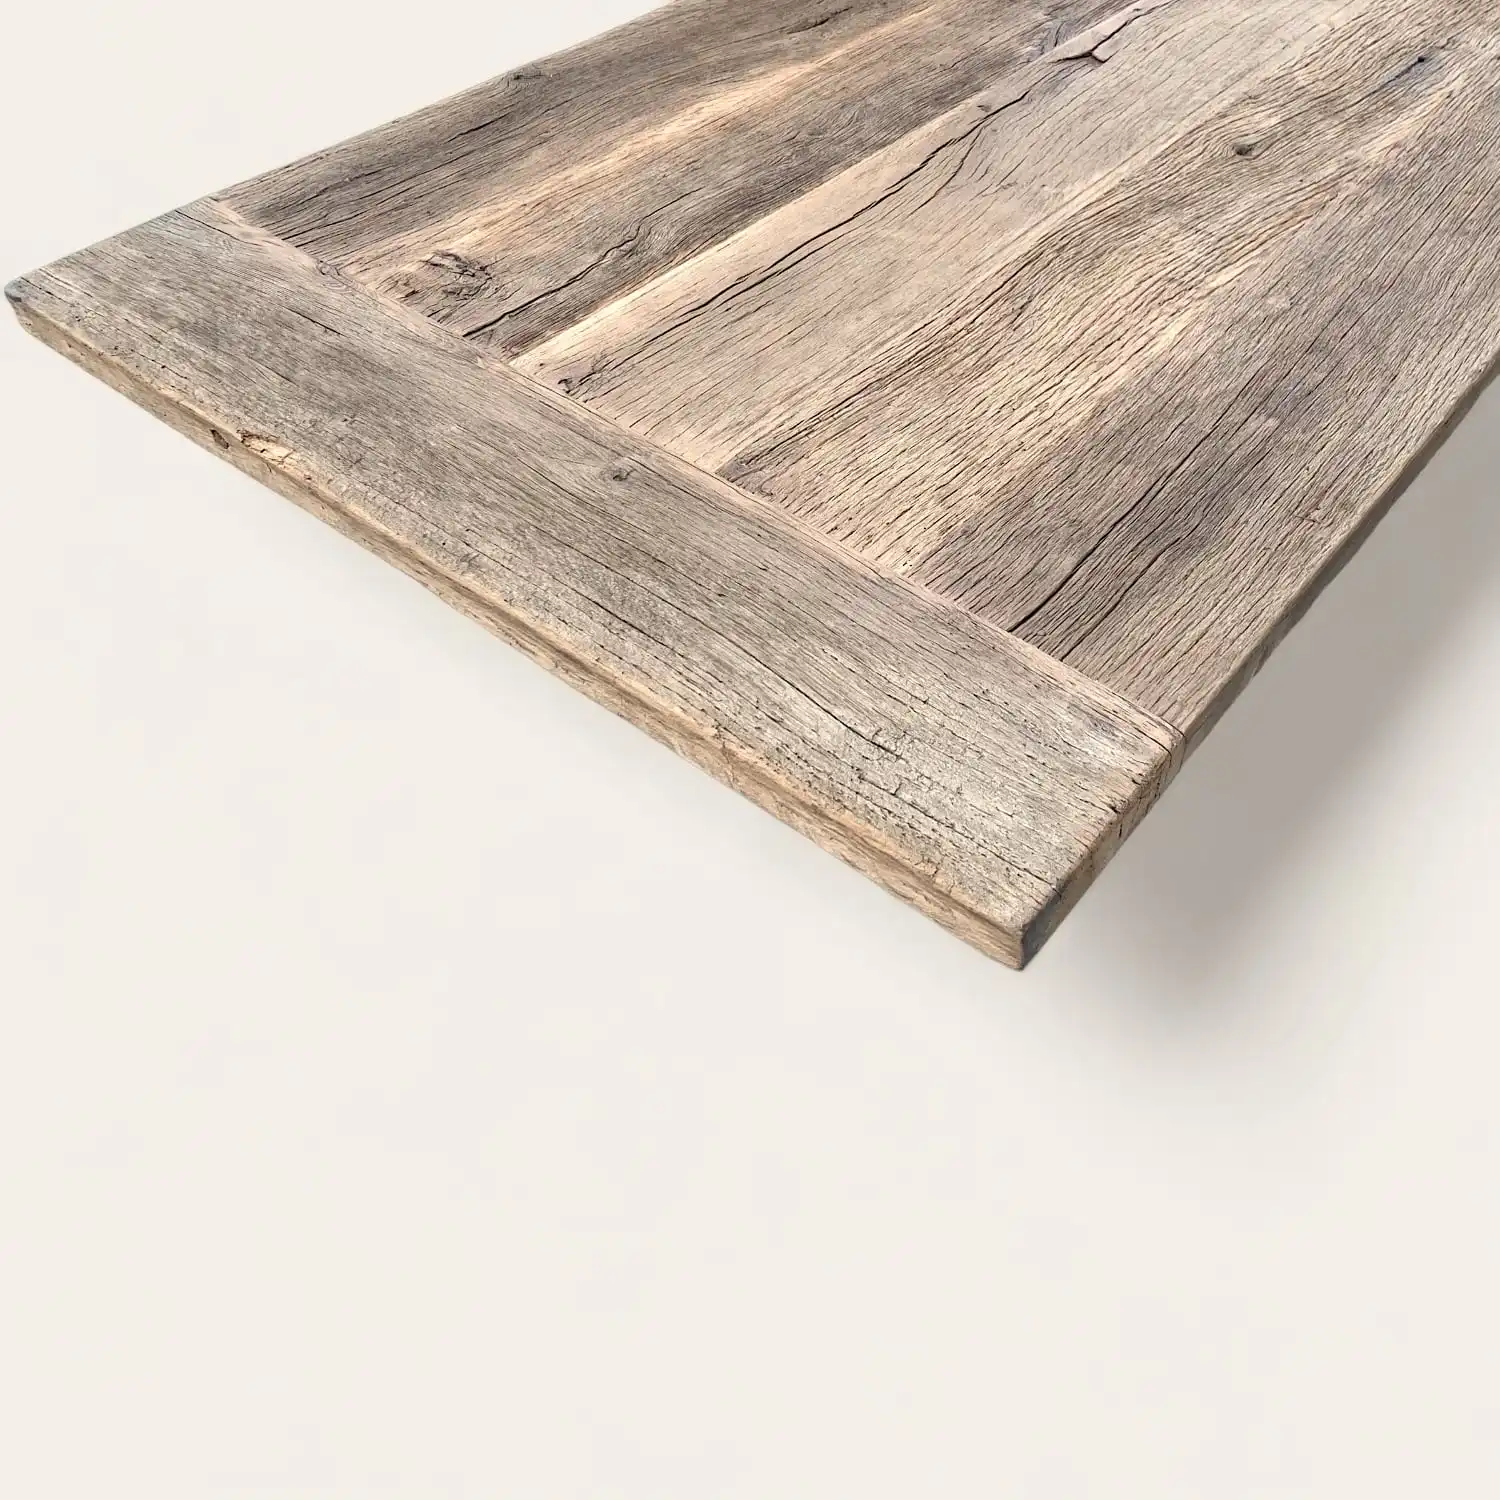  Vue en angle sur le plateau d'une table en bois ancien rustique, mettant en valeur la patine naturelle et les textures riches du bois, idéal pour un intérieur au design authentique et durable. 